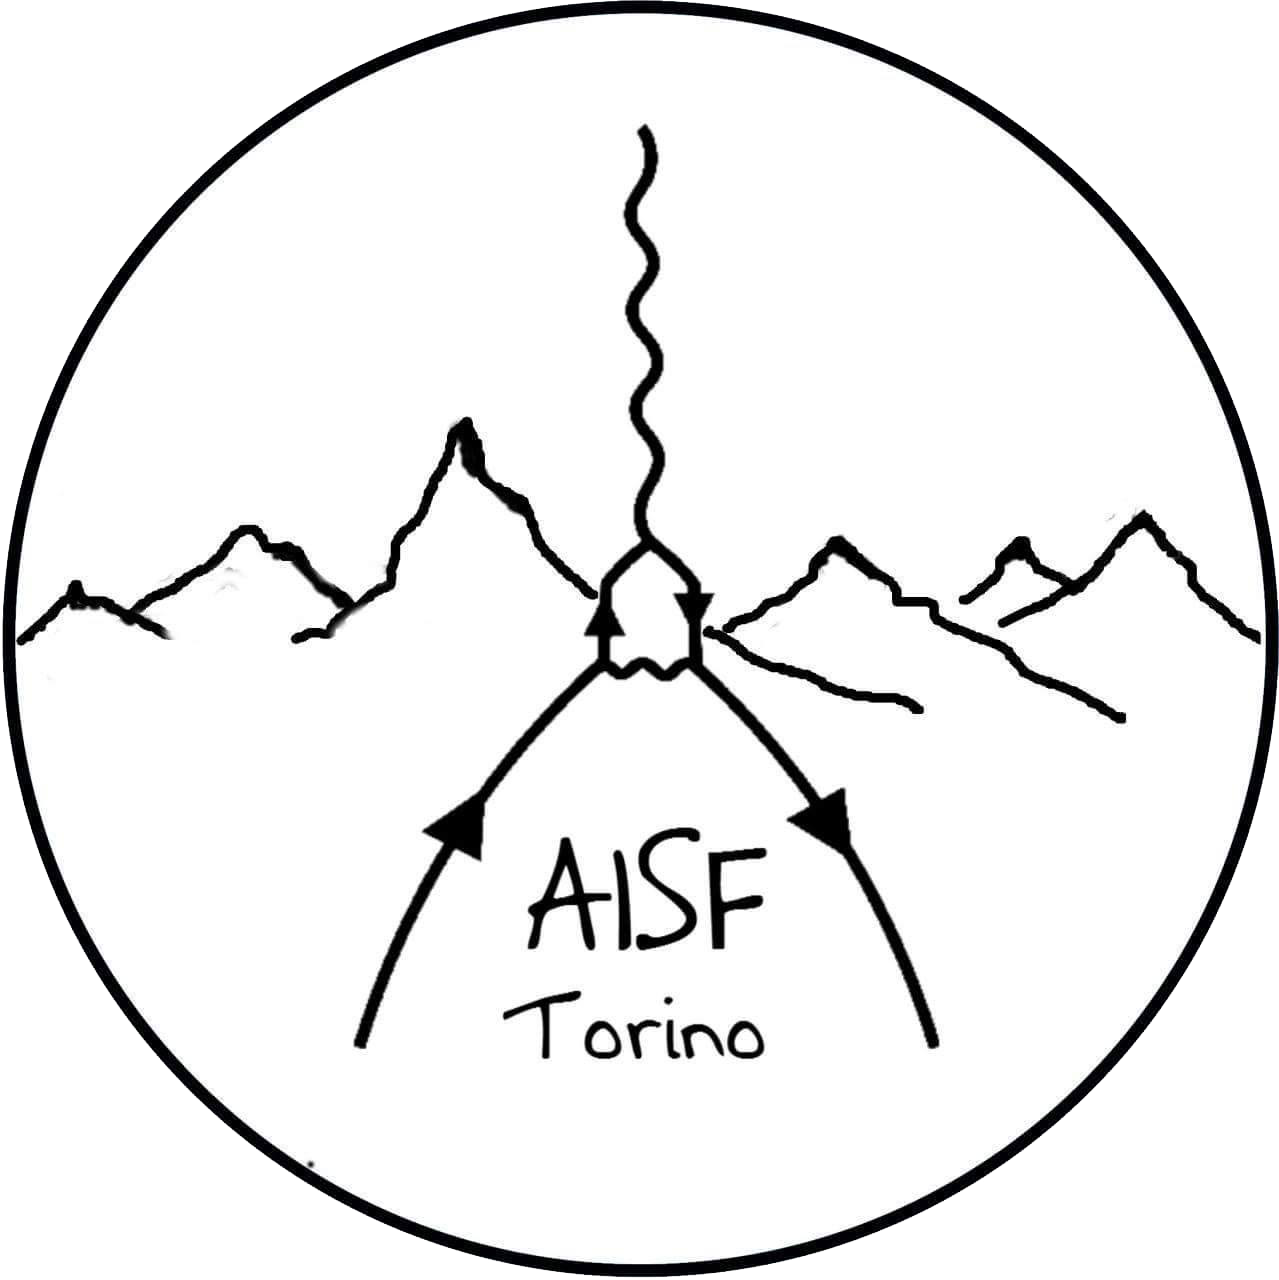 AISF Torino